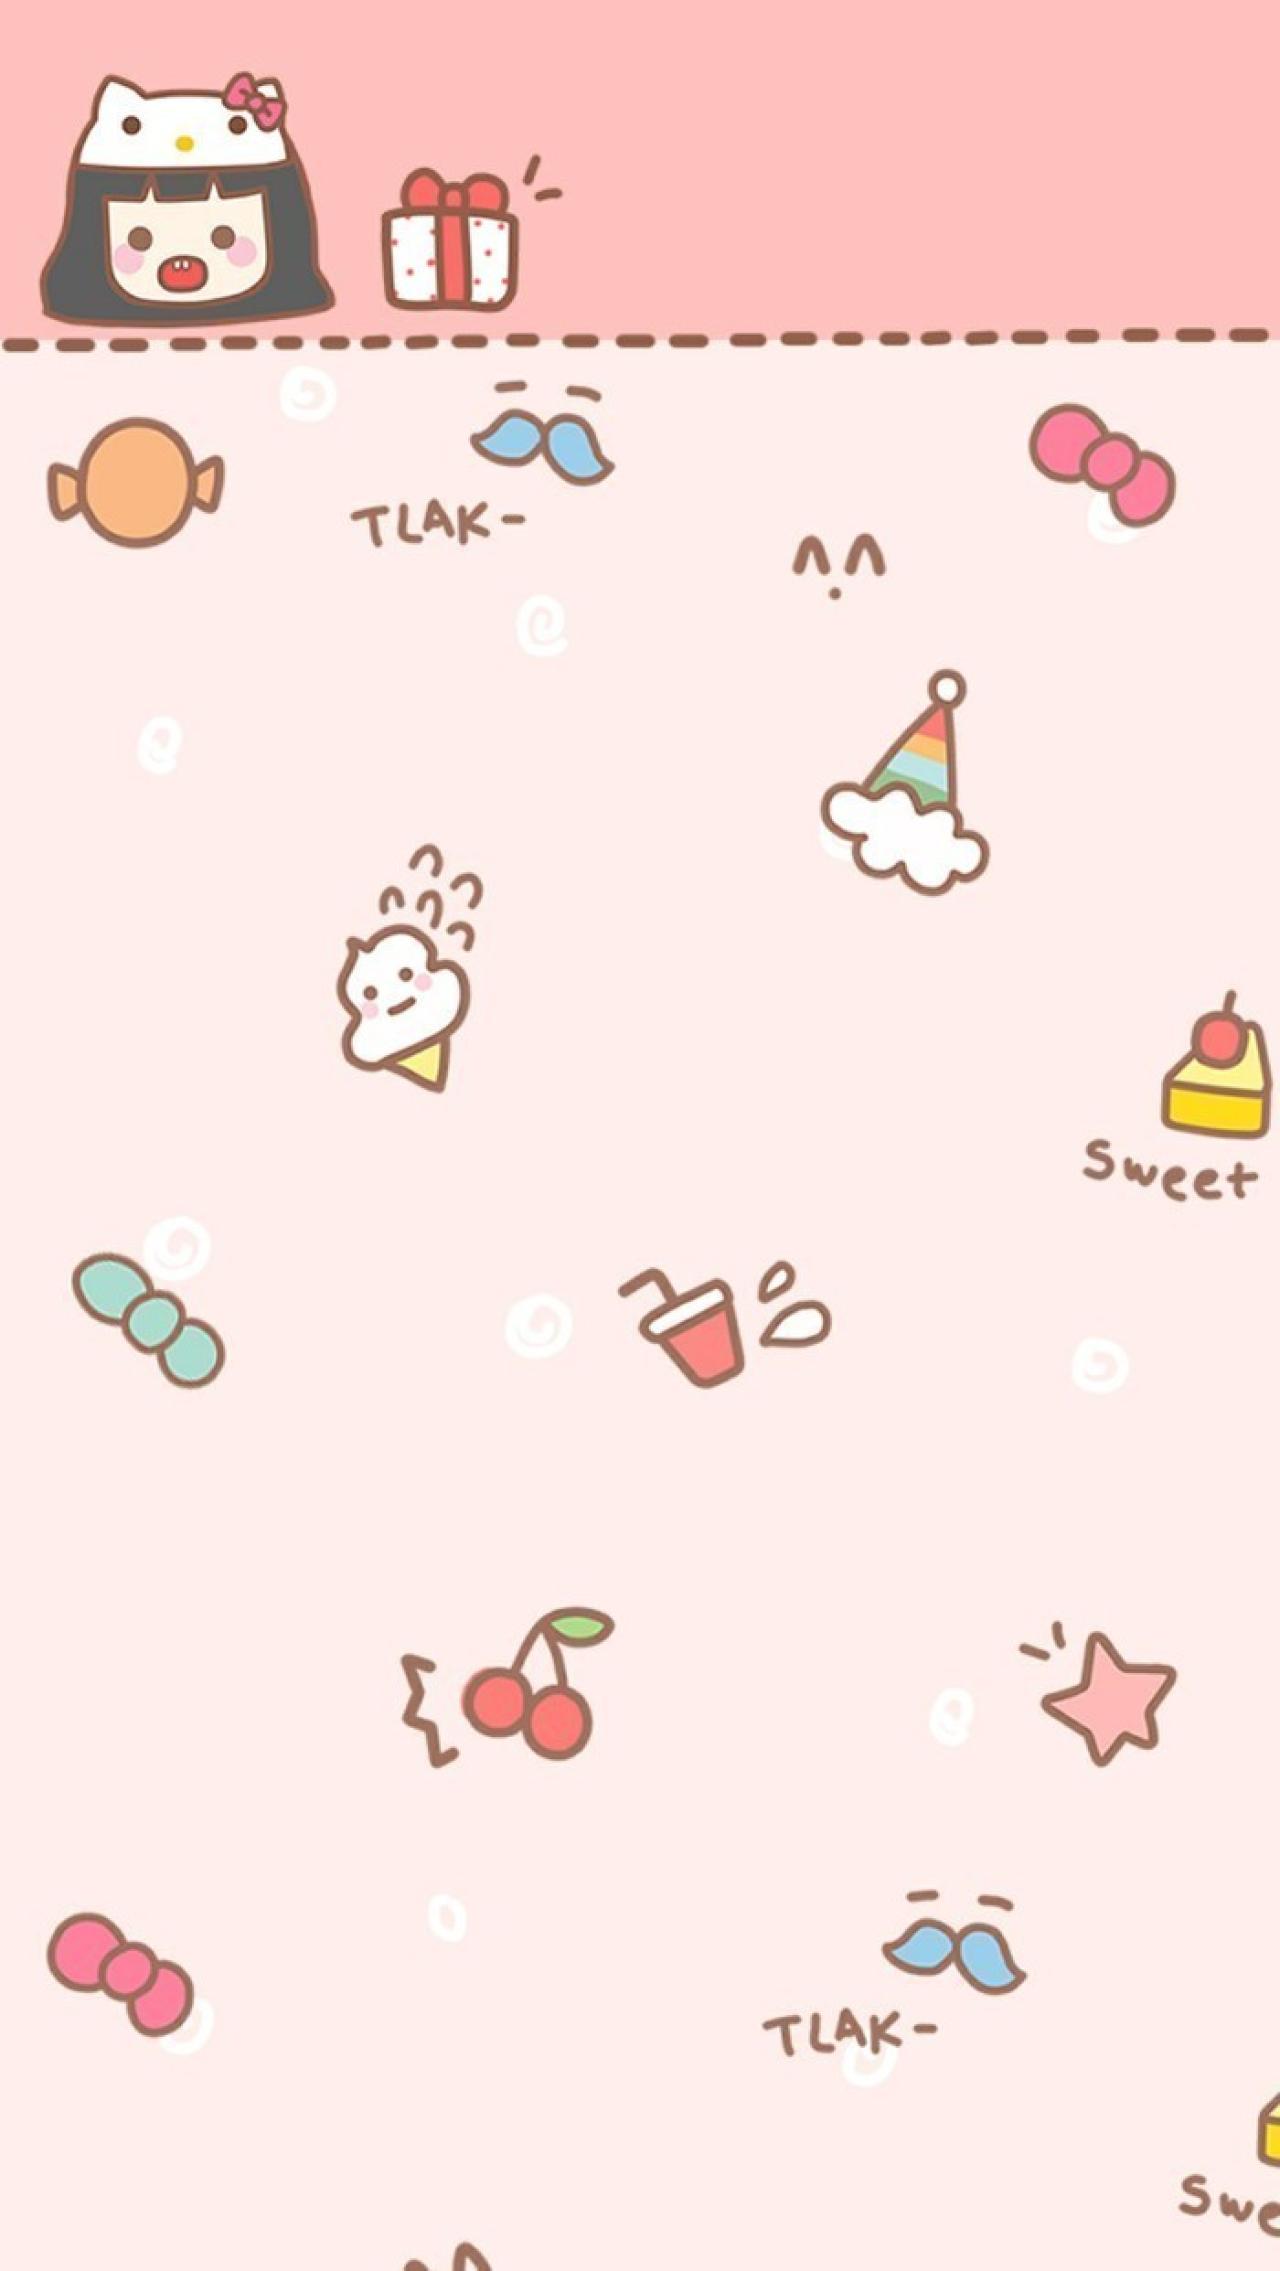 有头像、礼物栏的粉色调背景，冰淇淋、糖果、小甜点等图案装饰的手机壁纸